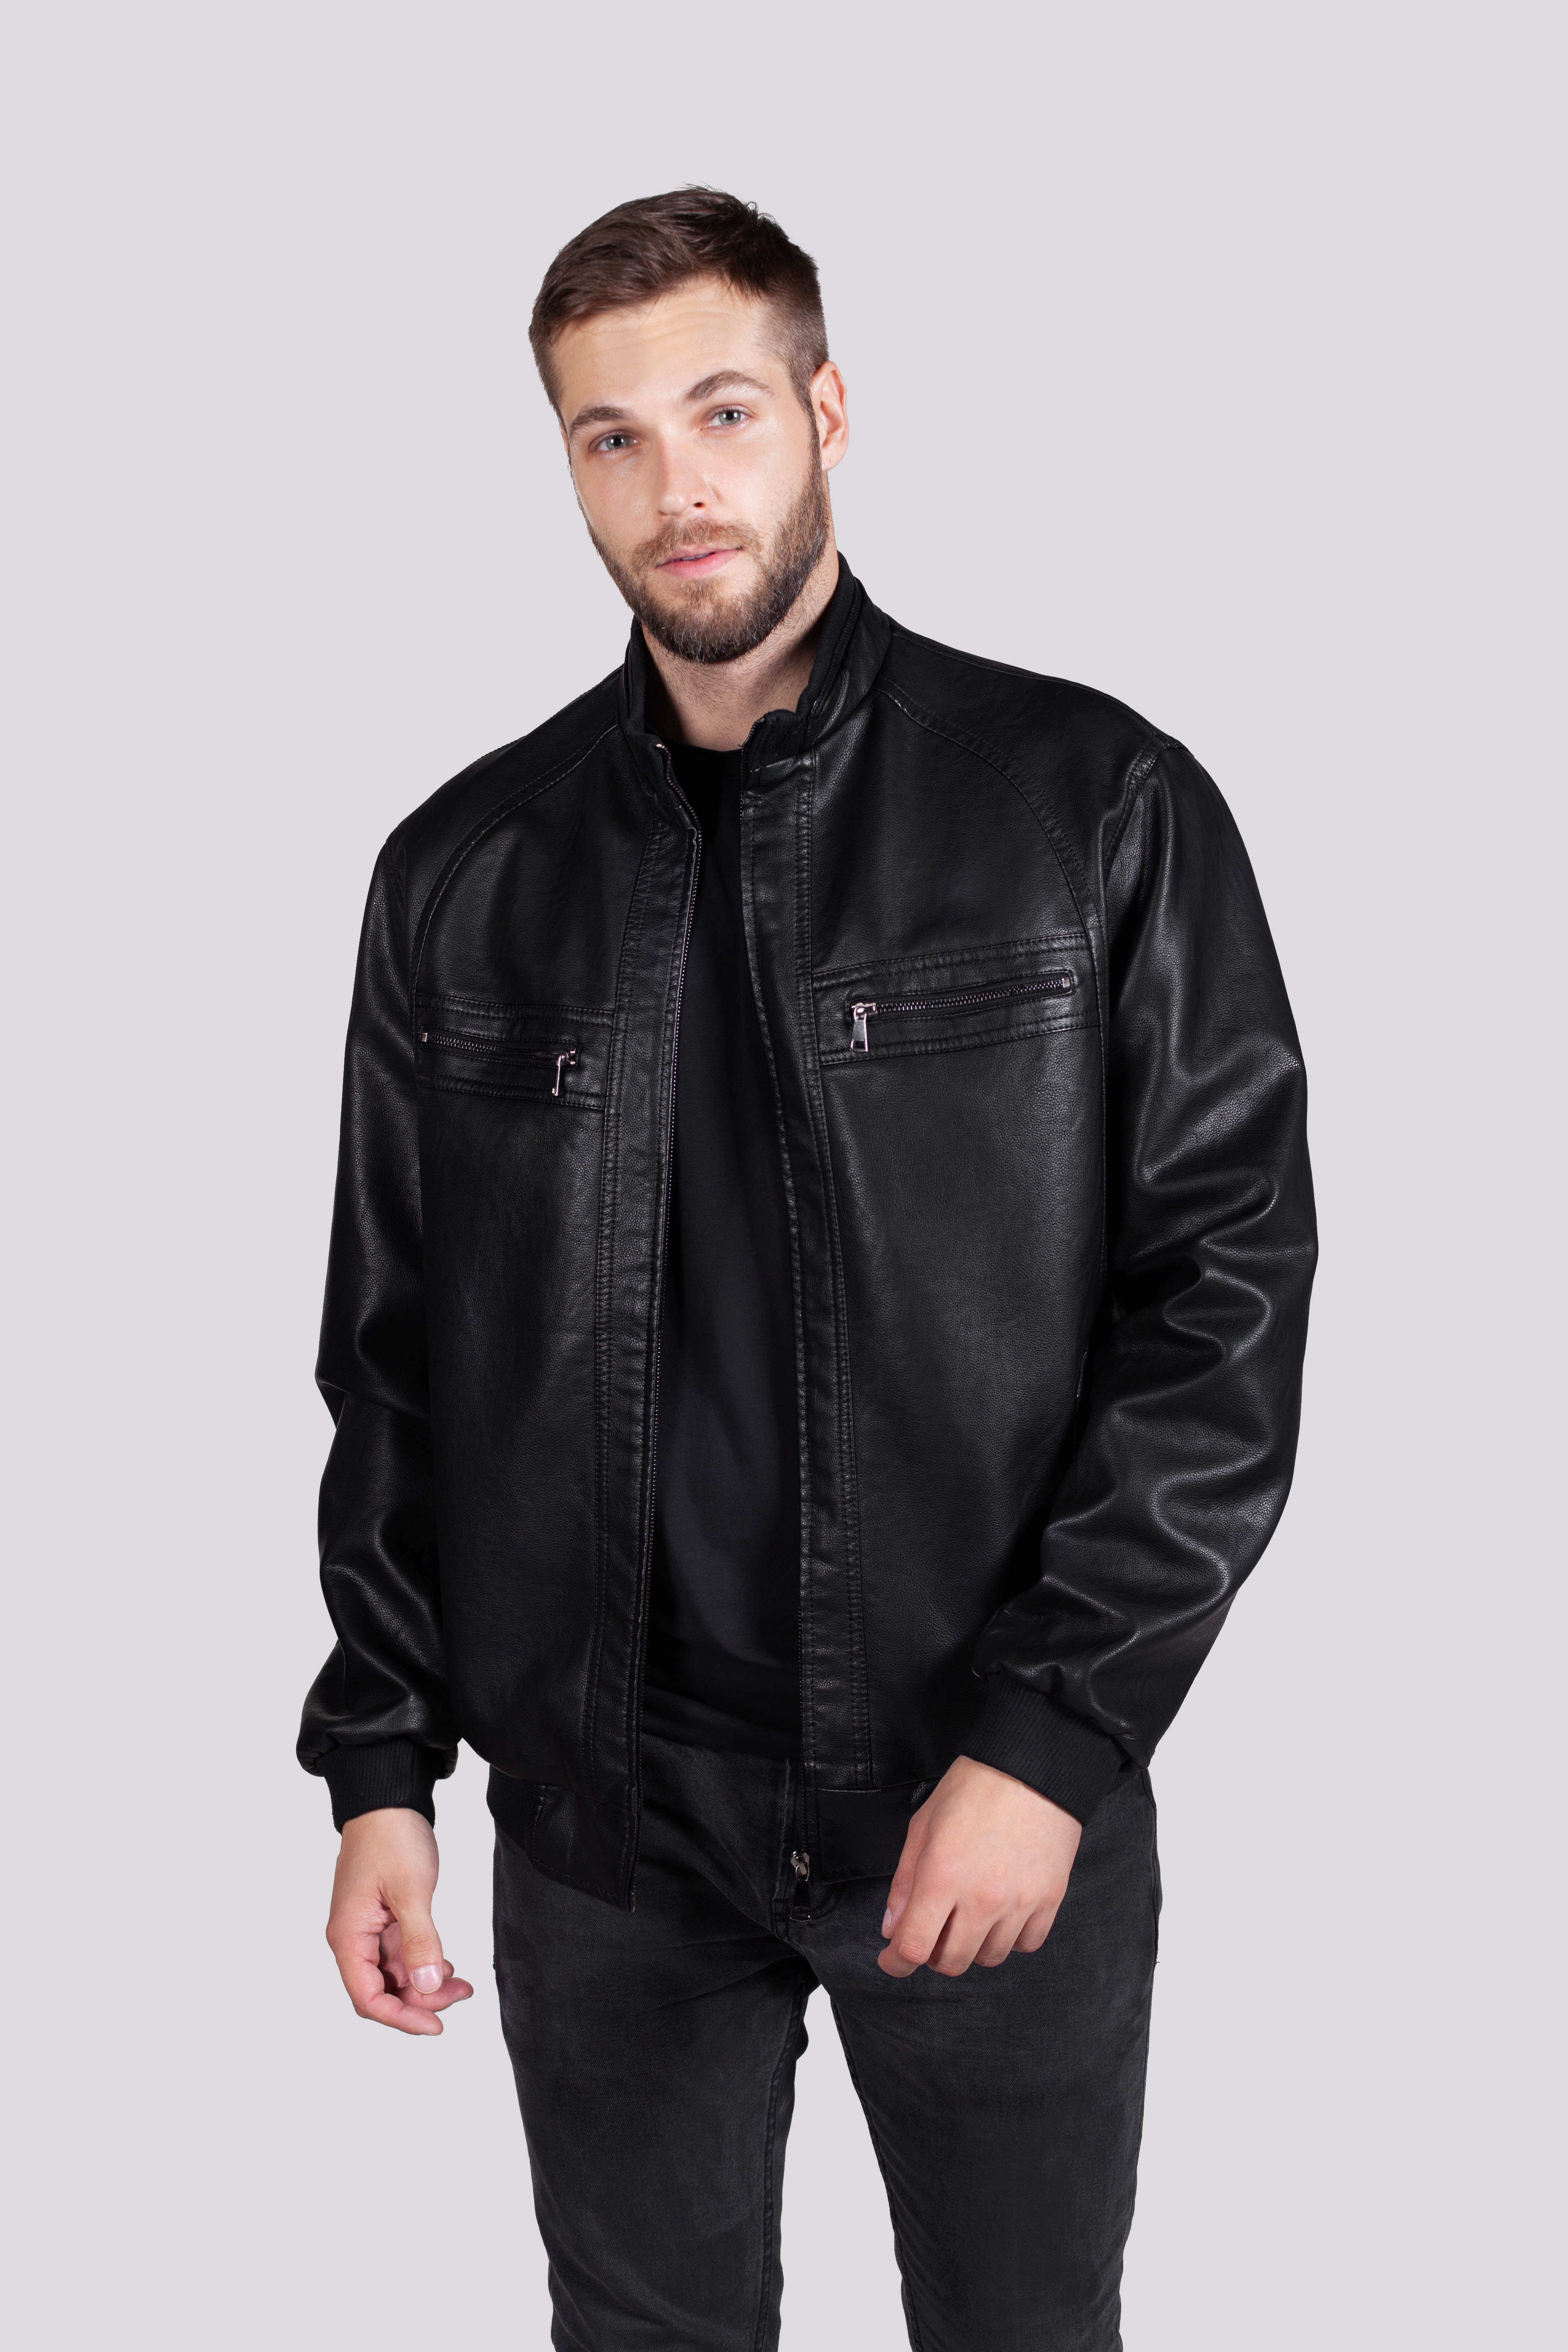 Кожаная куртка мужская RATSKA 809 черная 60 RU